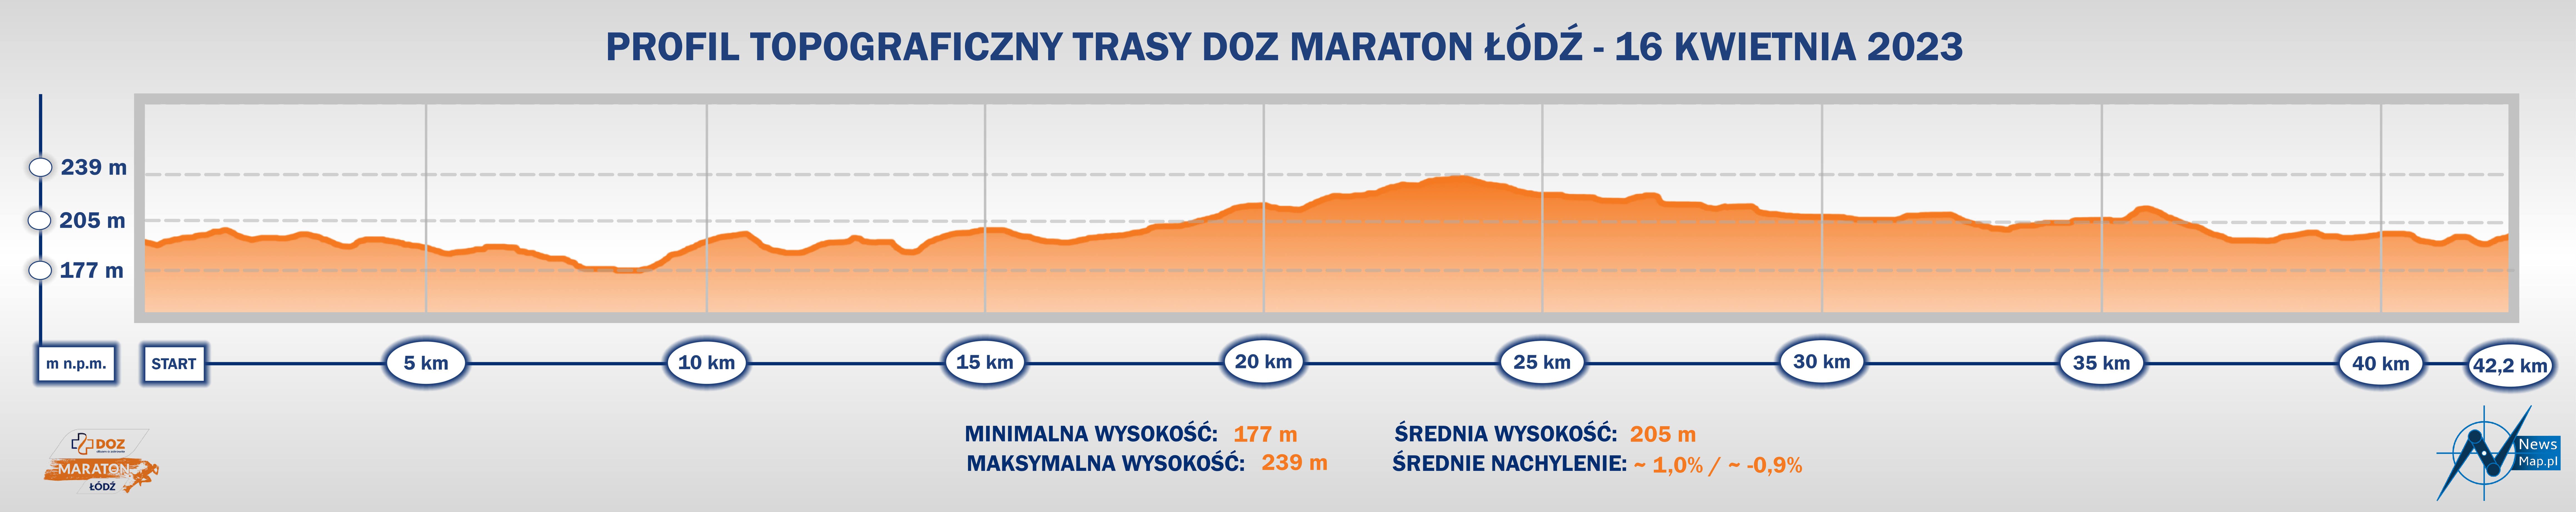 DOZ Maraton Łódź 2023 - profil topograficzny